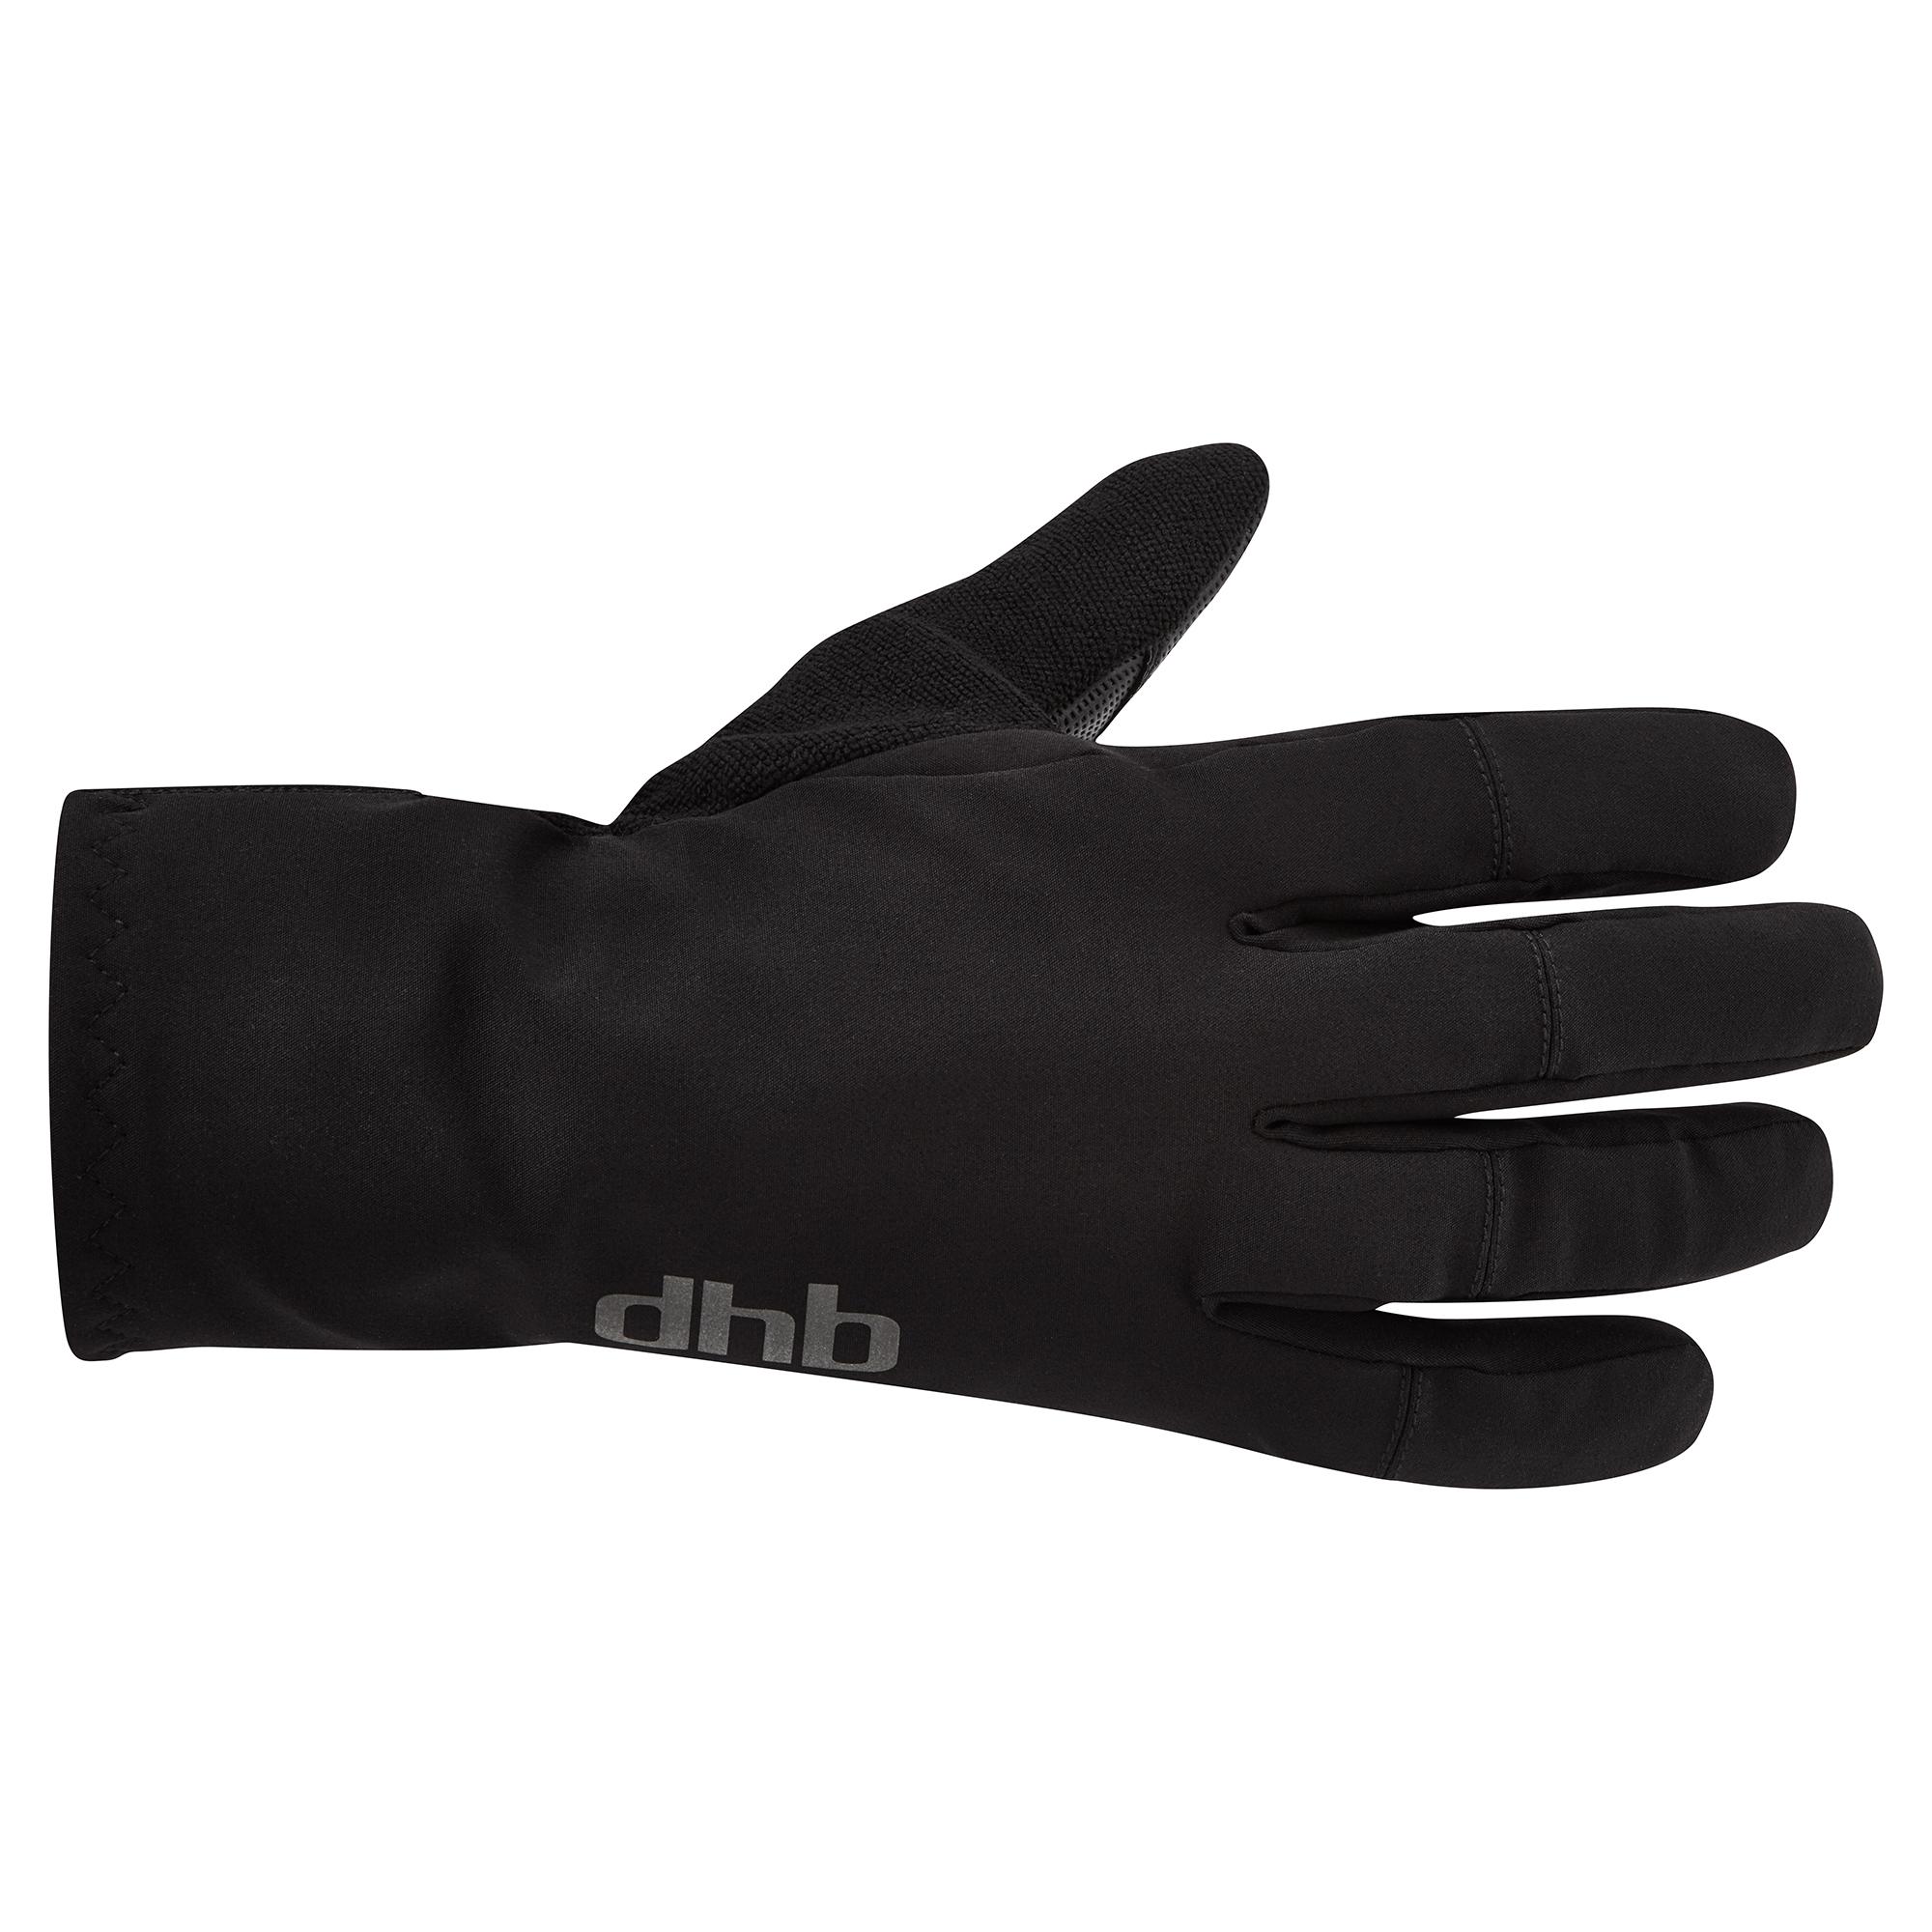 Dhb Merino Lined Winter Glove  Black